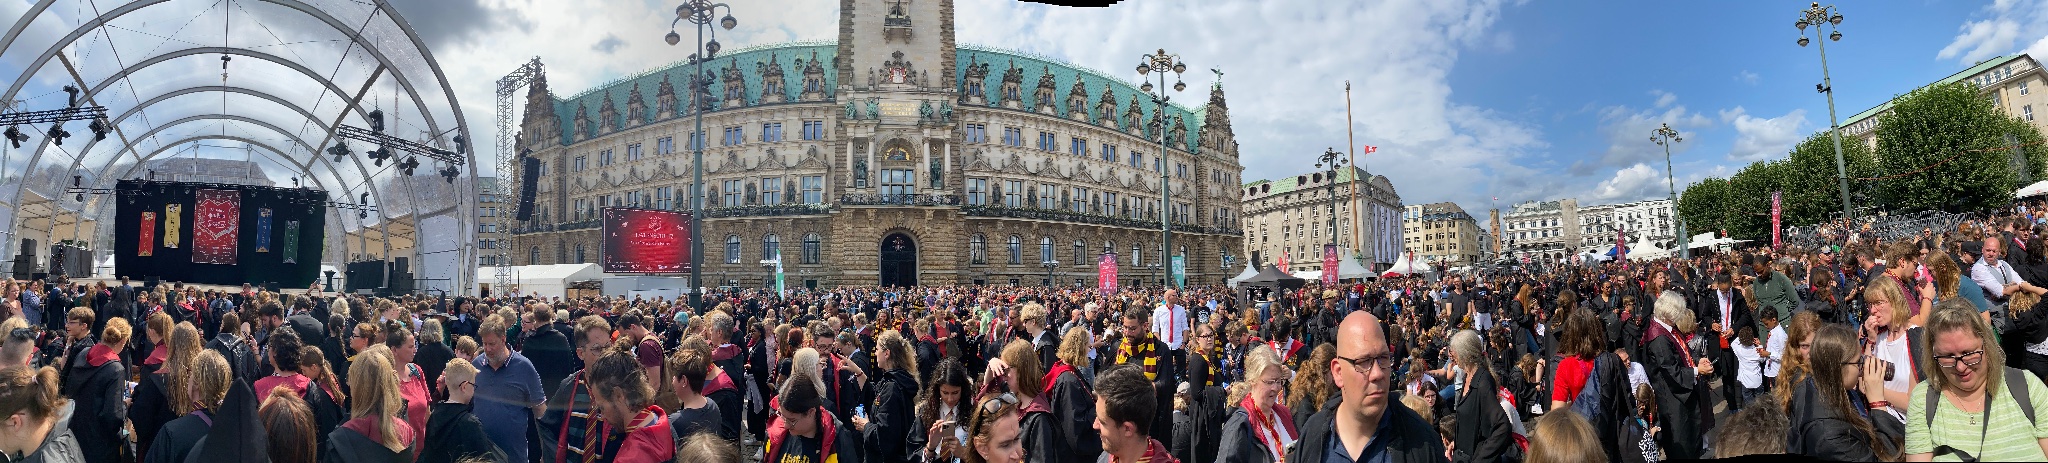 Στο Αμβούργο, το παγκόσμιο ρεκόρ μεγαλύτερης συγκέντρωσης "Χάρι Πότερ"